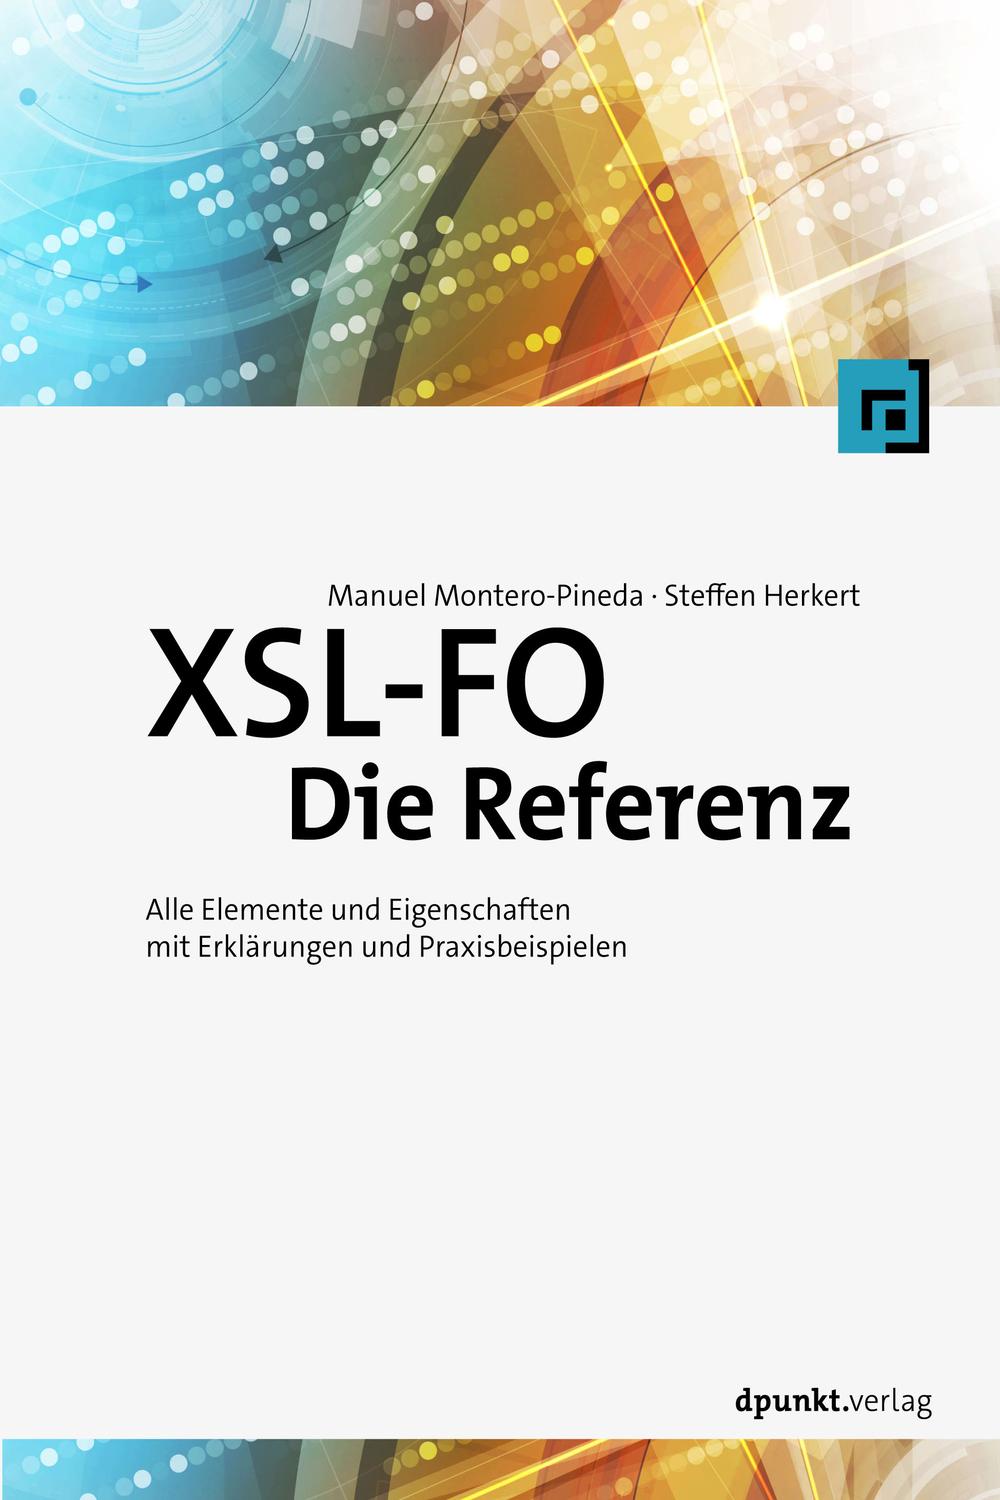 XSL-FO - Die Referenz - Manuel Montero-Pineda, Steffen Herkert